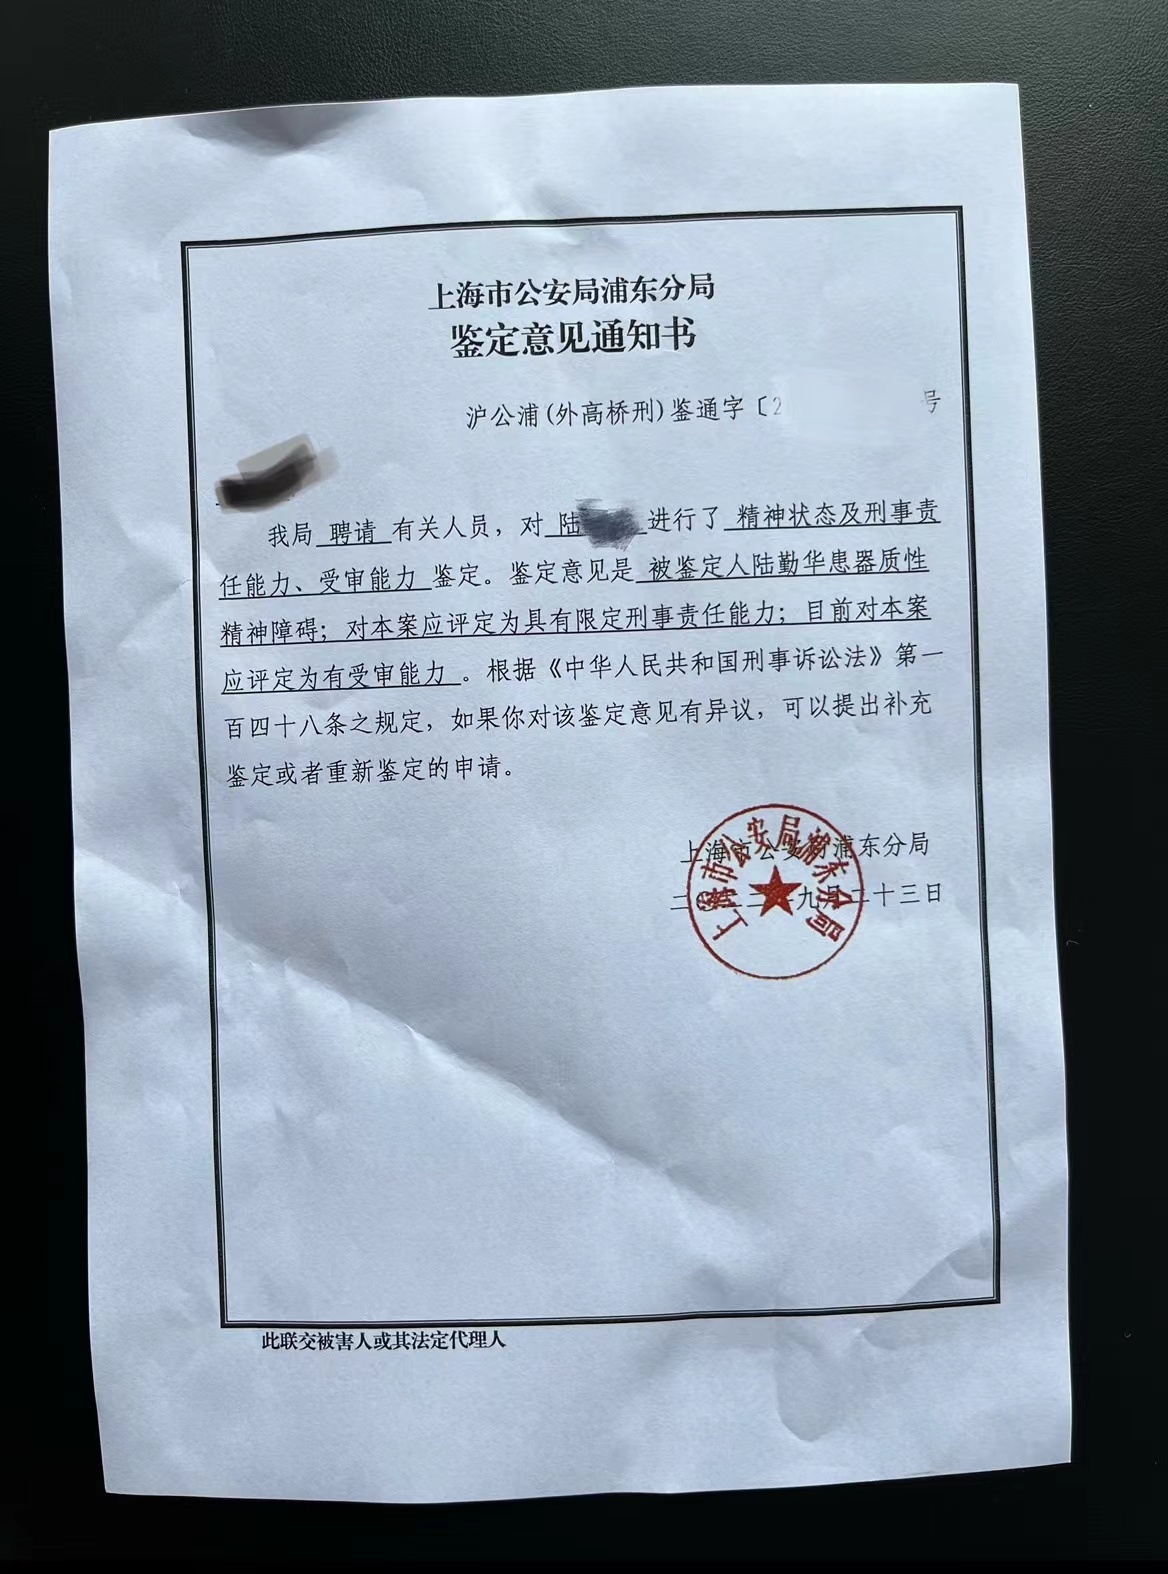 上海故意推倒摩托车老人去世  受损车主坚持索赔“拒绝道德绑架”